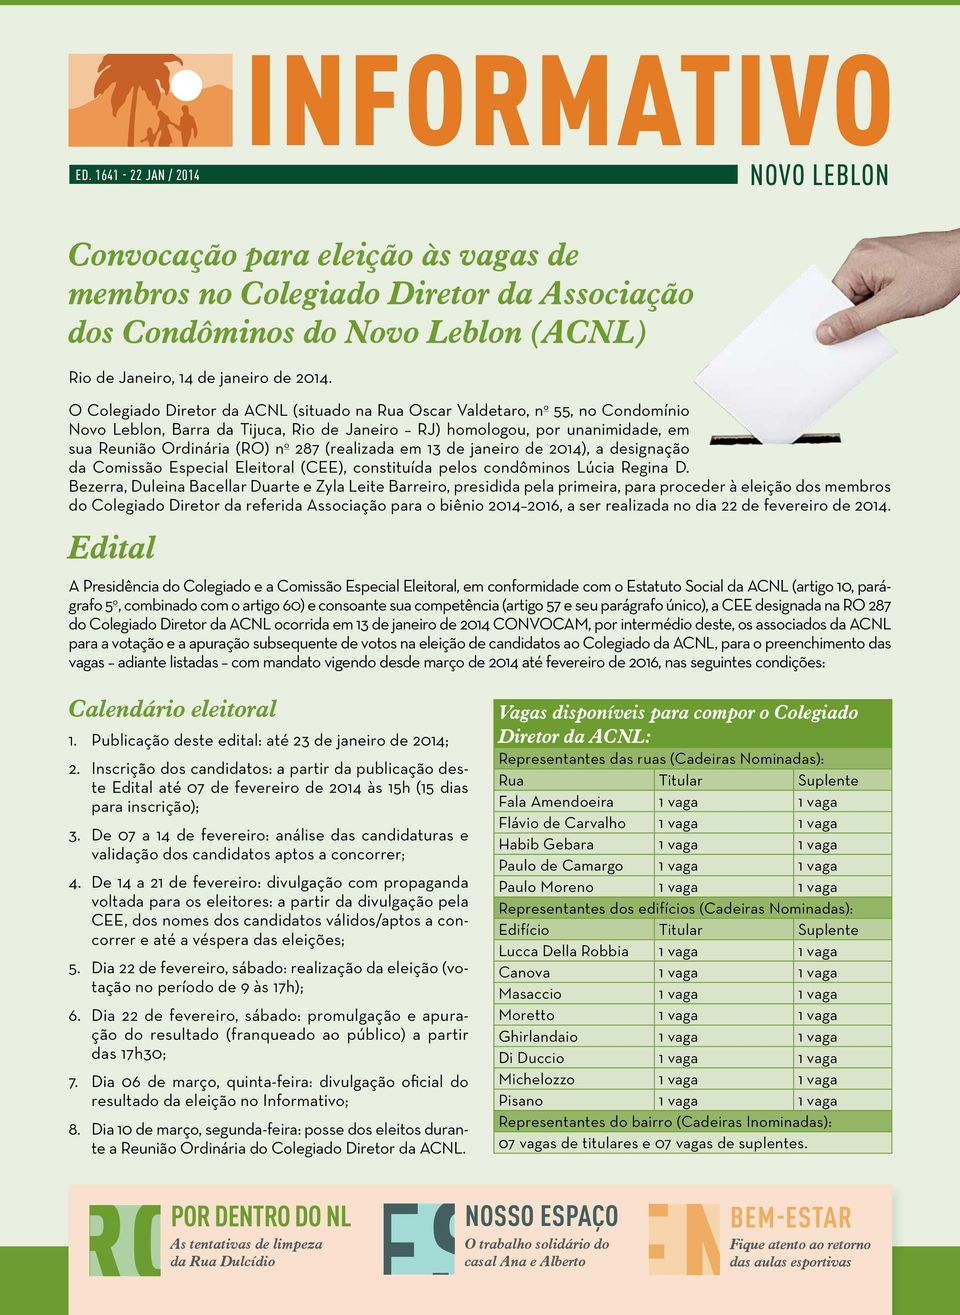 287 (realizada em 13 de janeiro de 2014), a designação da Comissão Especial Eleitoral (CEE), constituída pelos condôminos Lúcia Regina D.